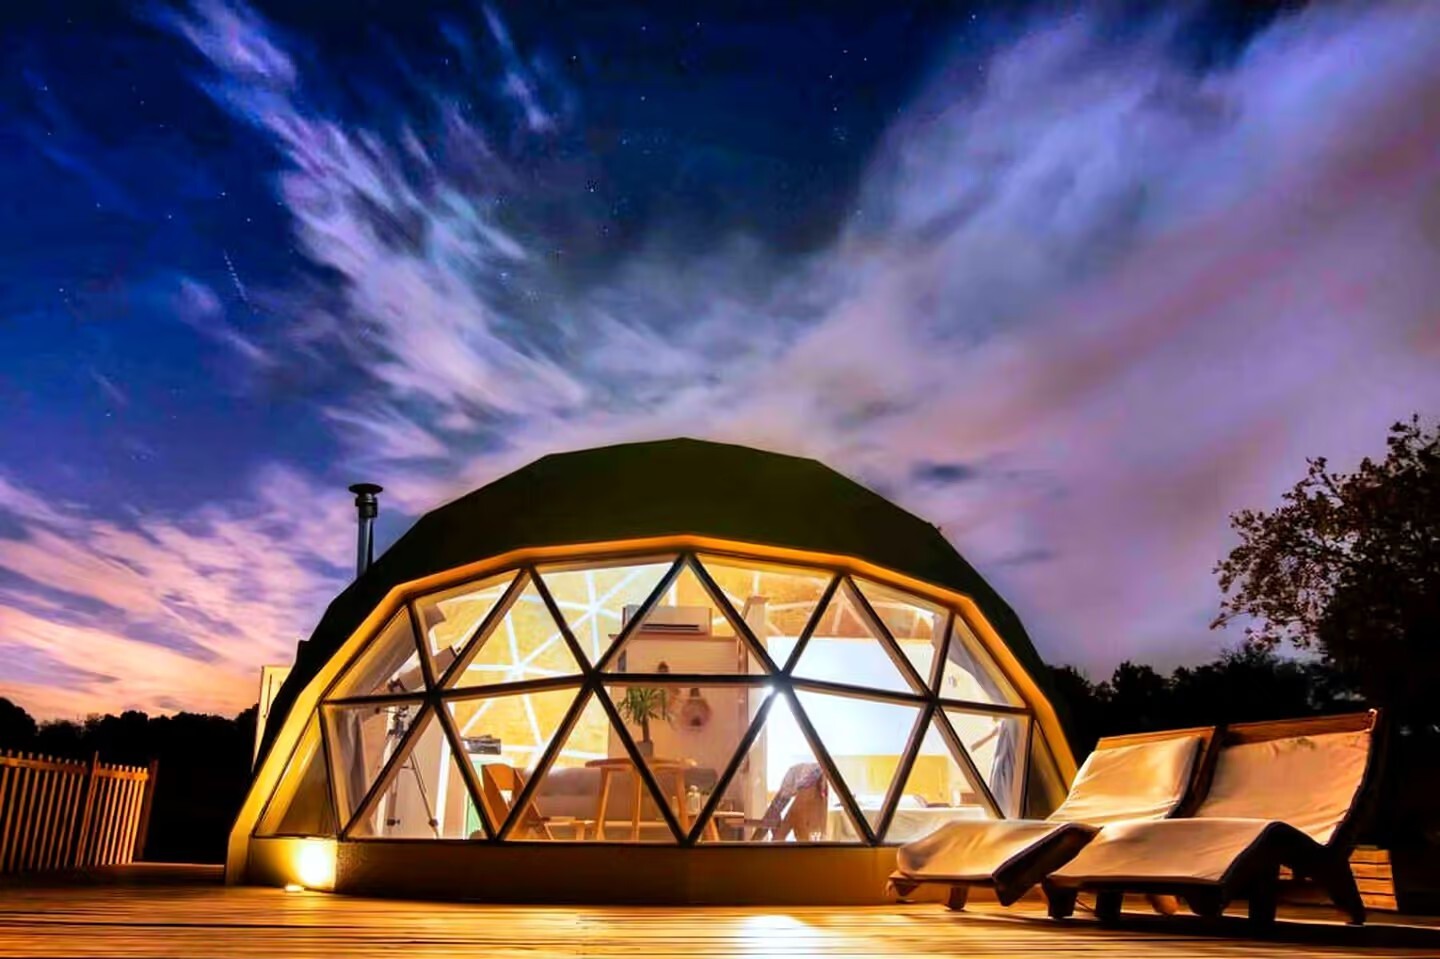 مفهوم تصميم خيمة فندق القبة 丨 فريق تصميم من الدرجة الأولى